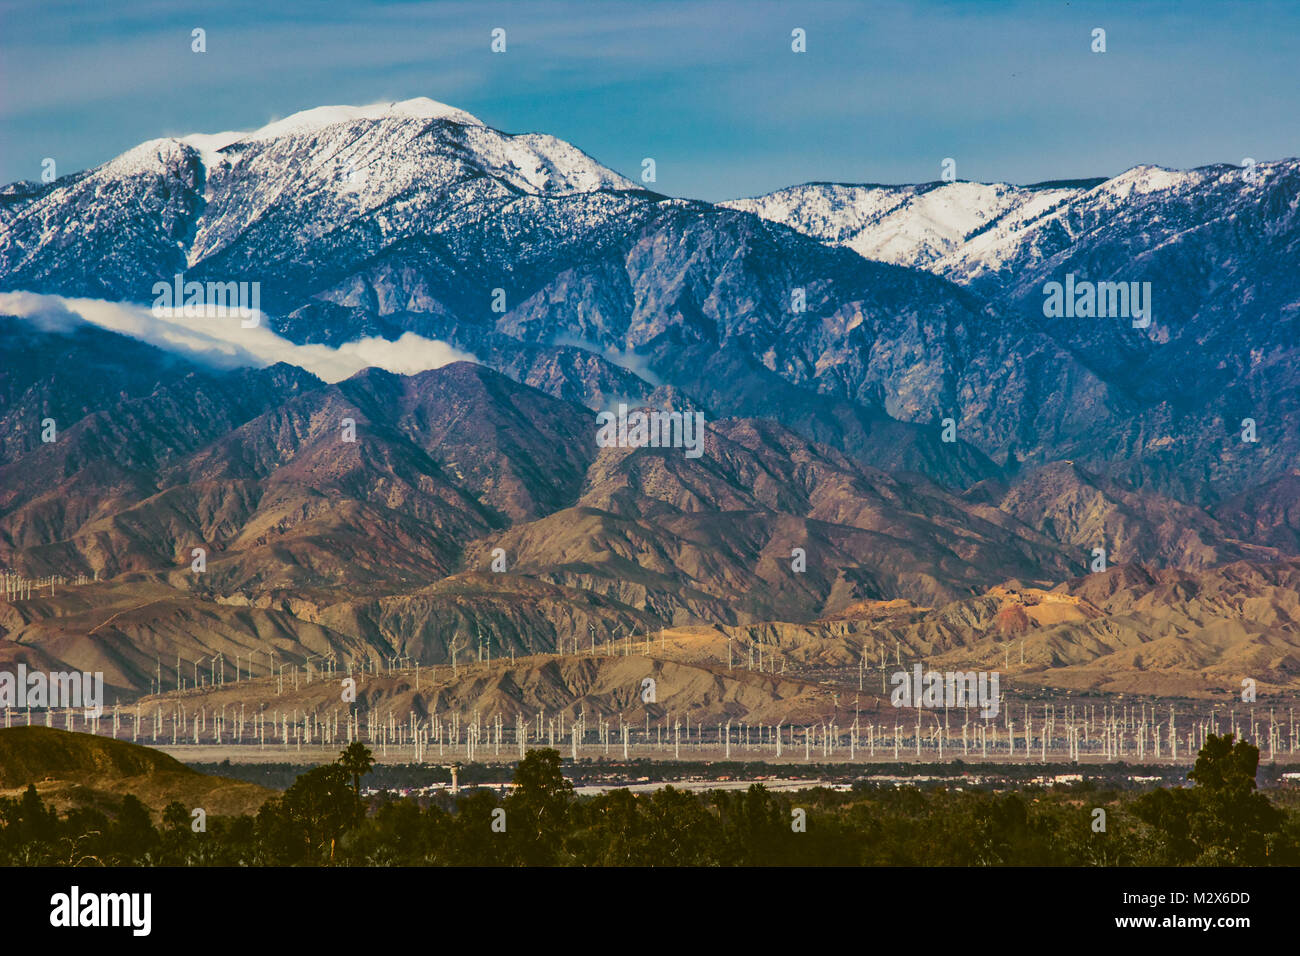 Hermosos nevados Mount San Jacinto se eleva por encima del valle de Coachella y San Gorgonio Pass Wind Farm, Palm Desert, California Foto de stock